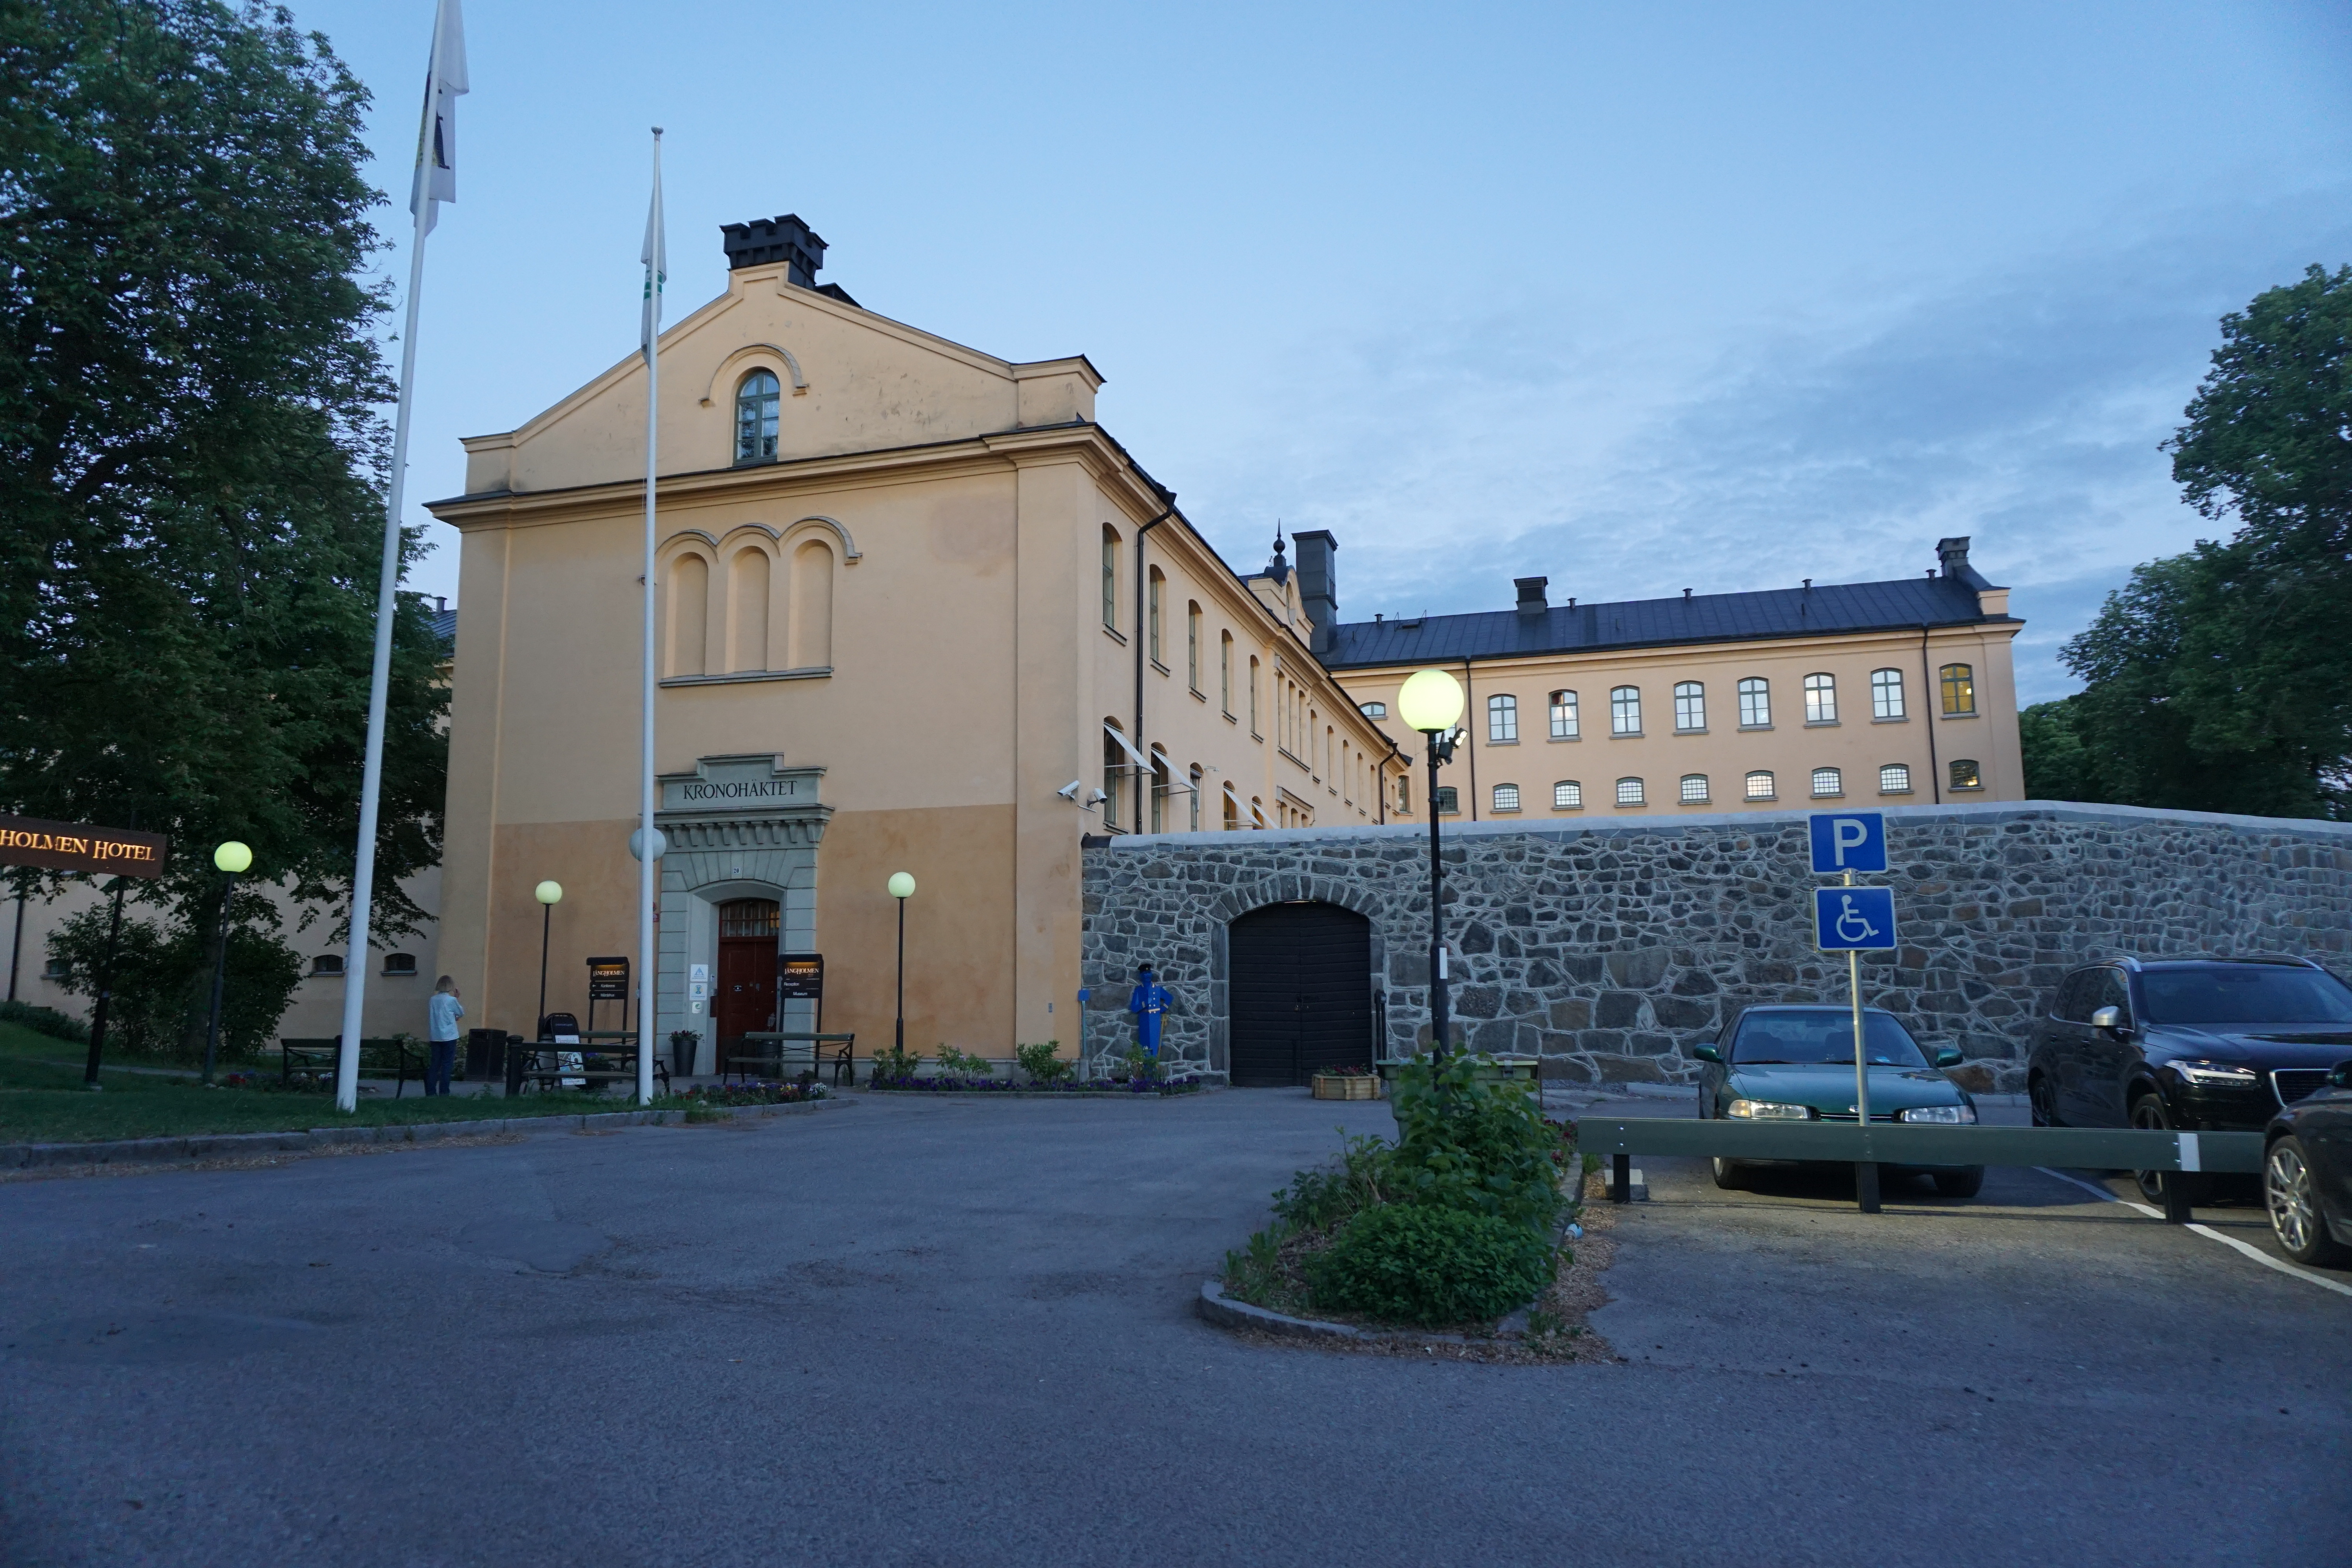 former prison transformed into budget hostel in Stockholm